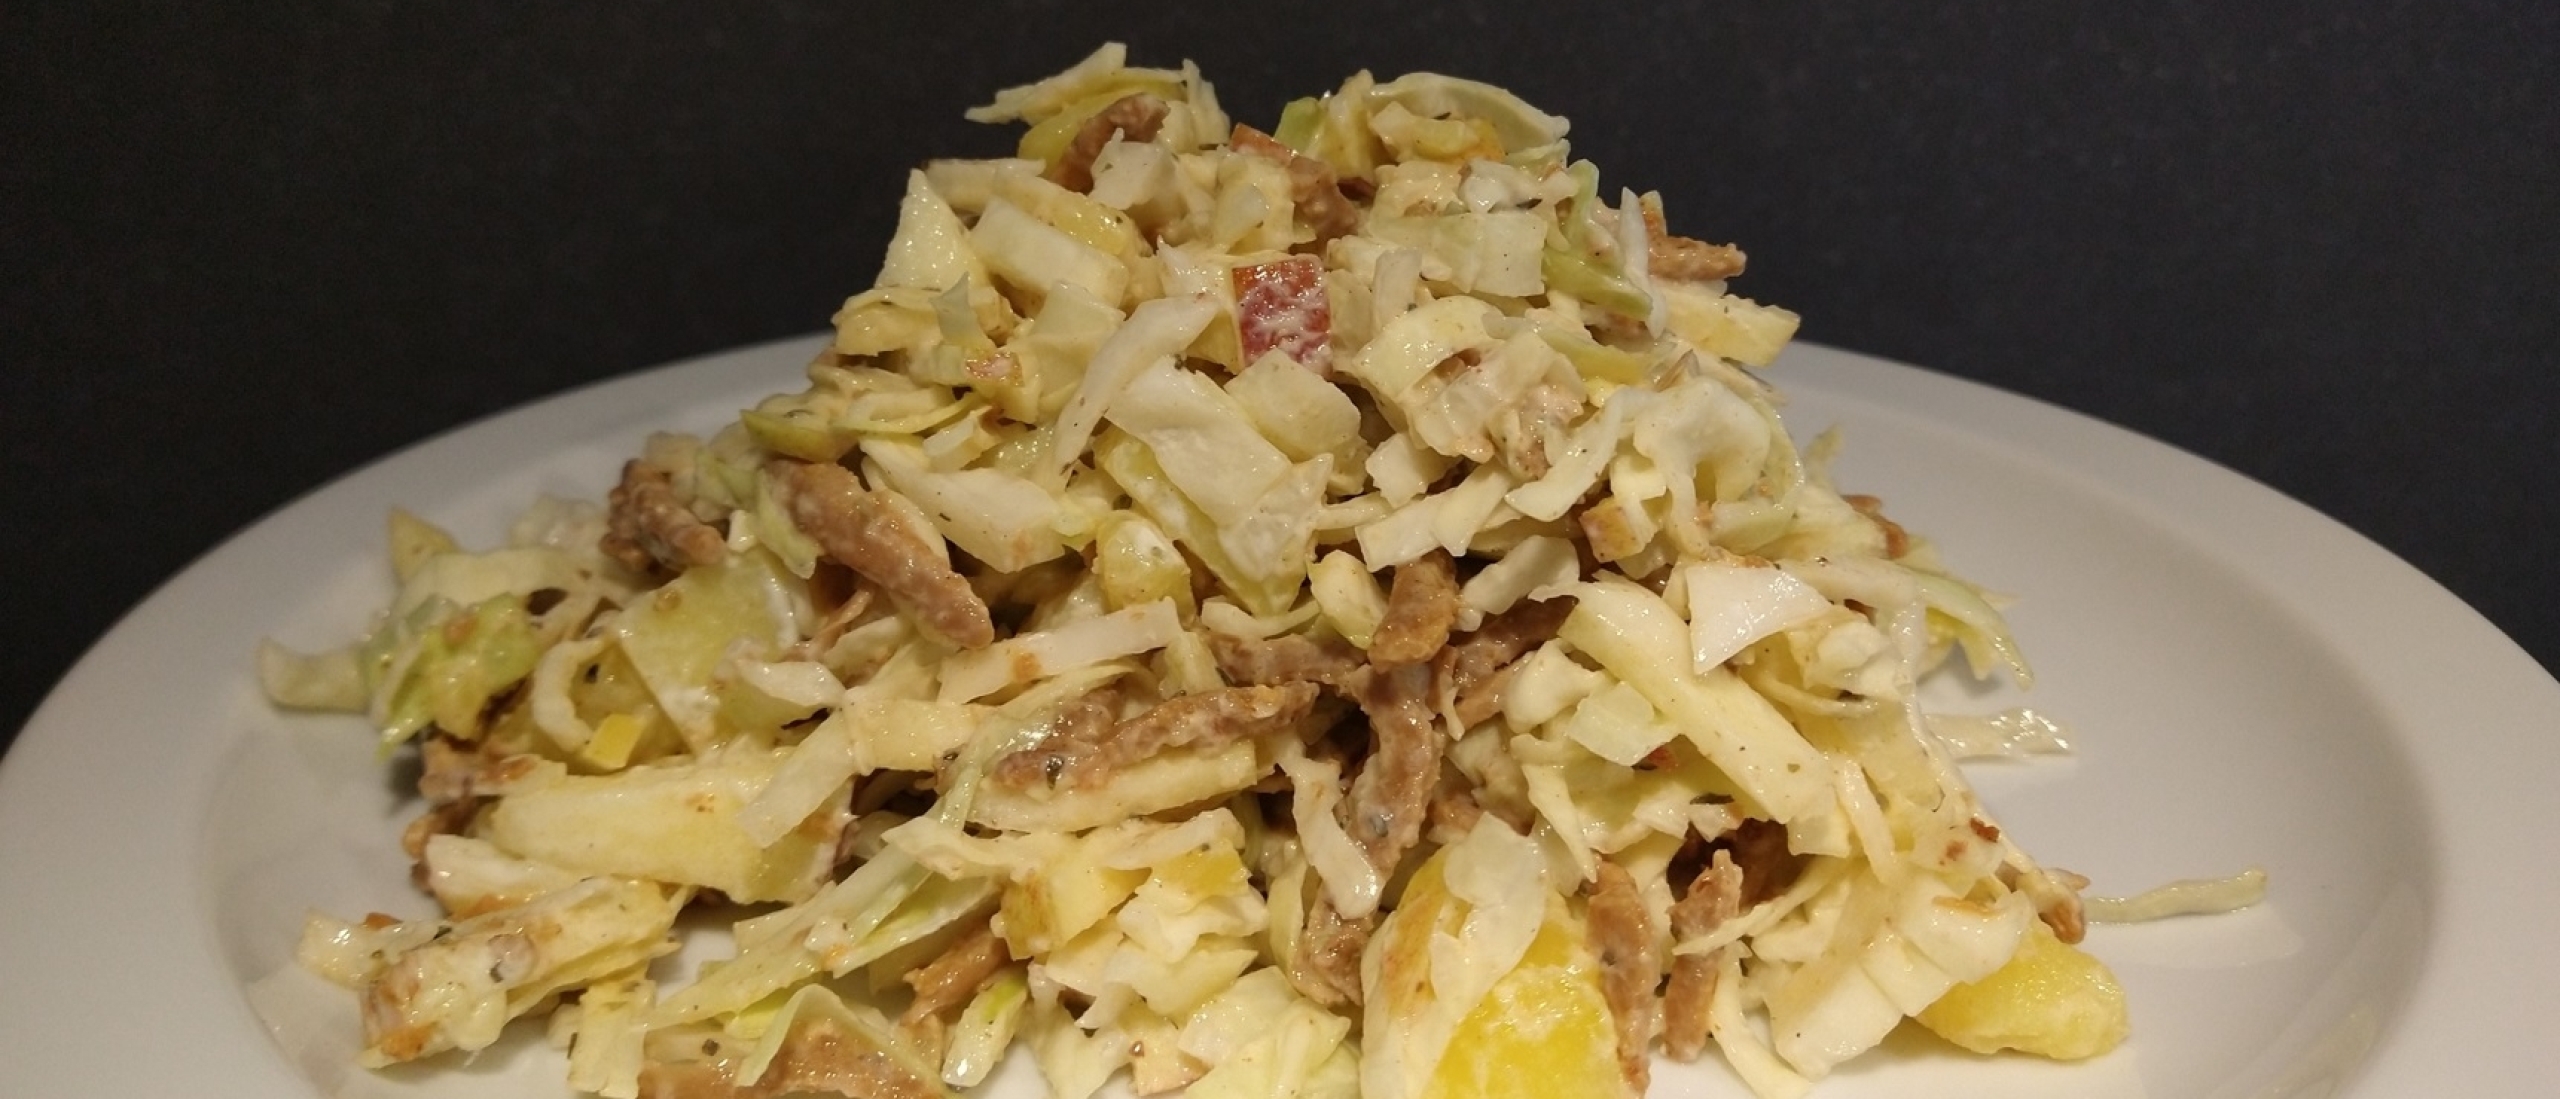 Witte kool salade met vegetarische gyros gezond en caloriearm slaatje recept